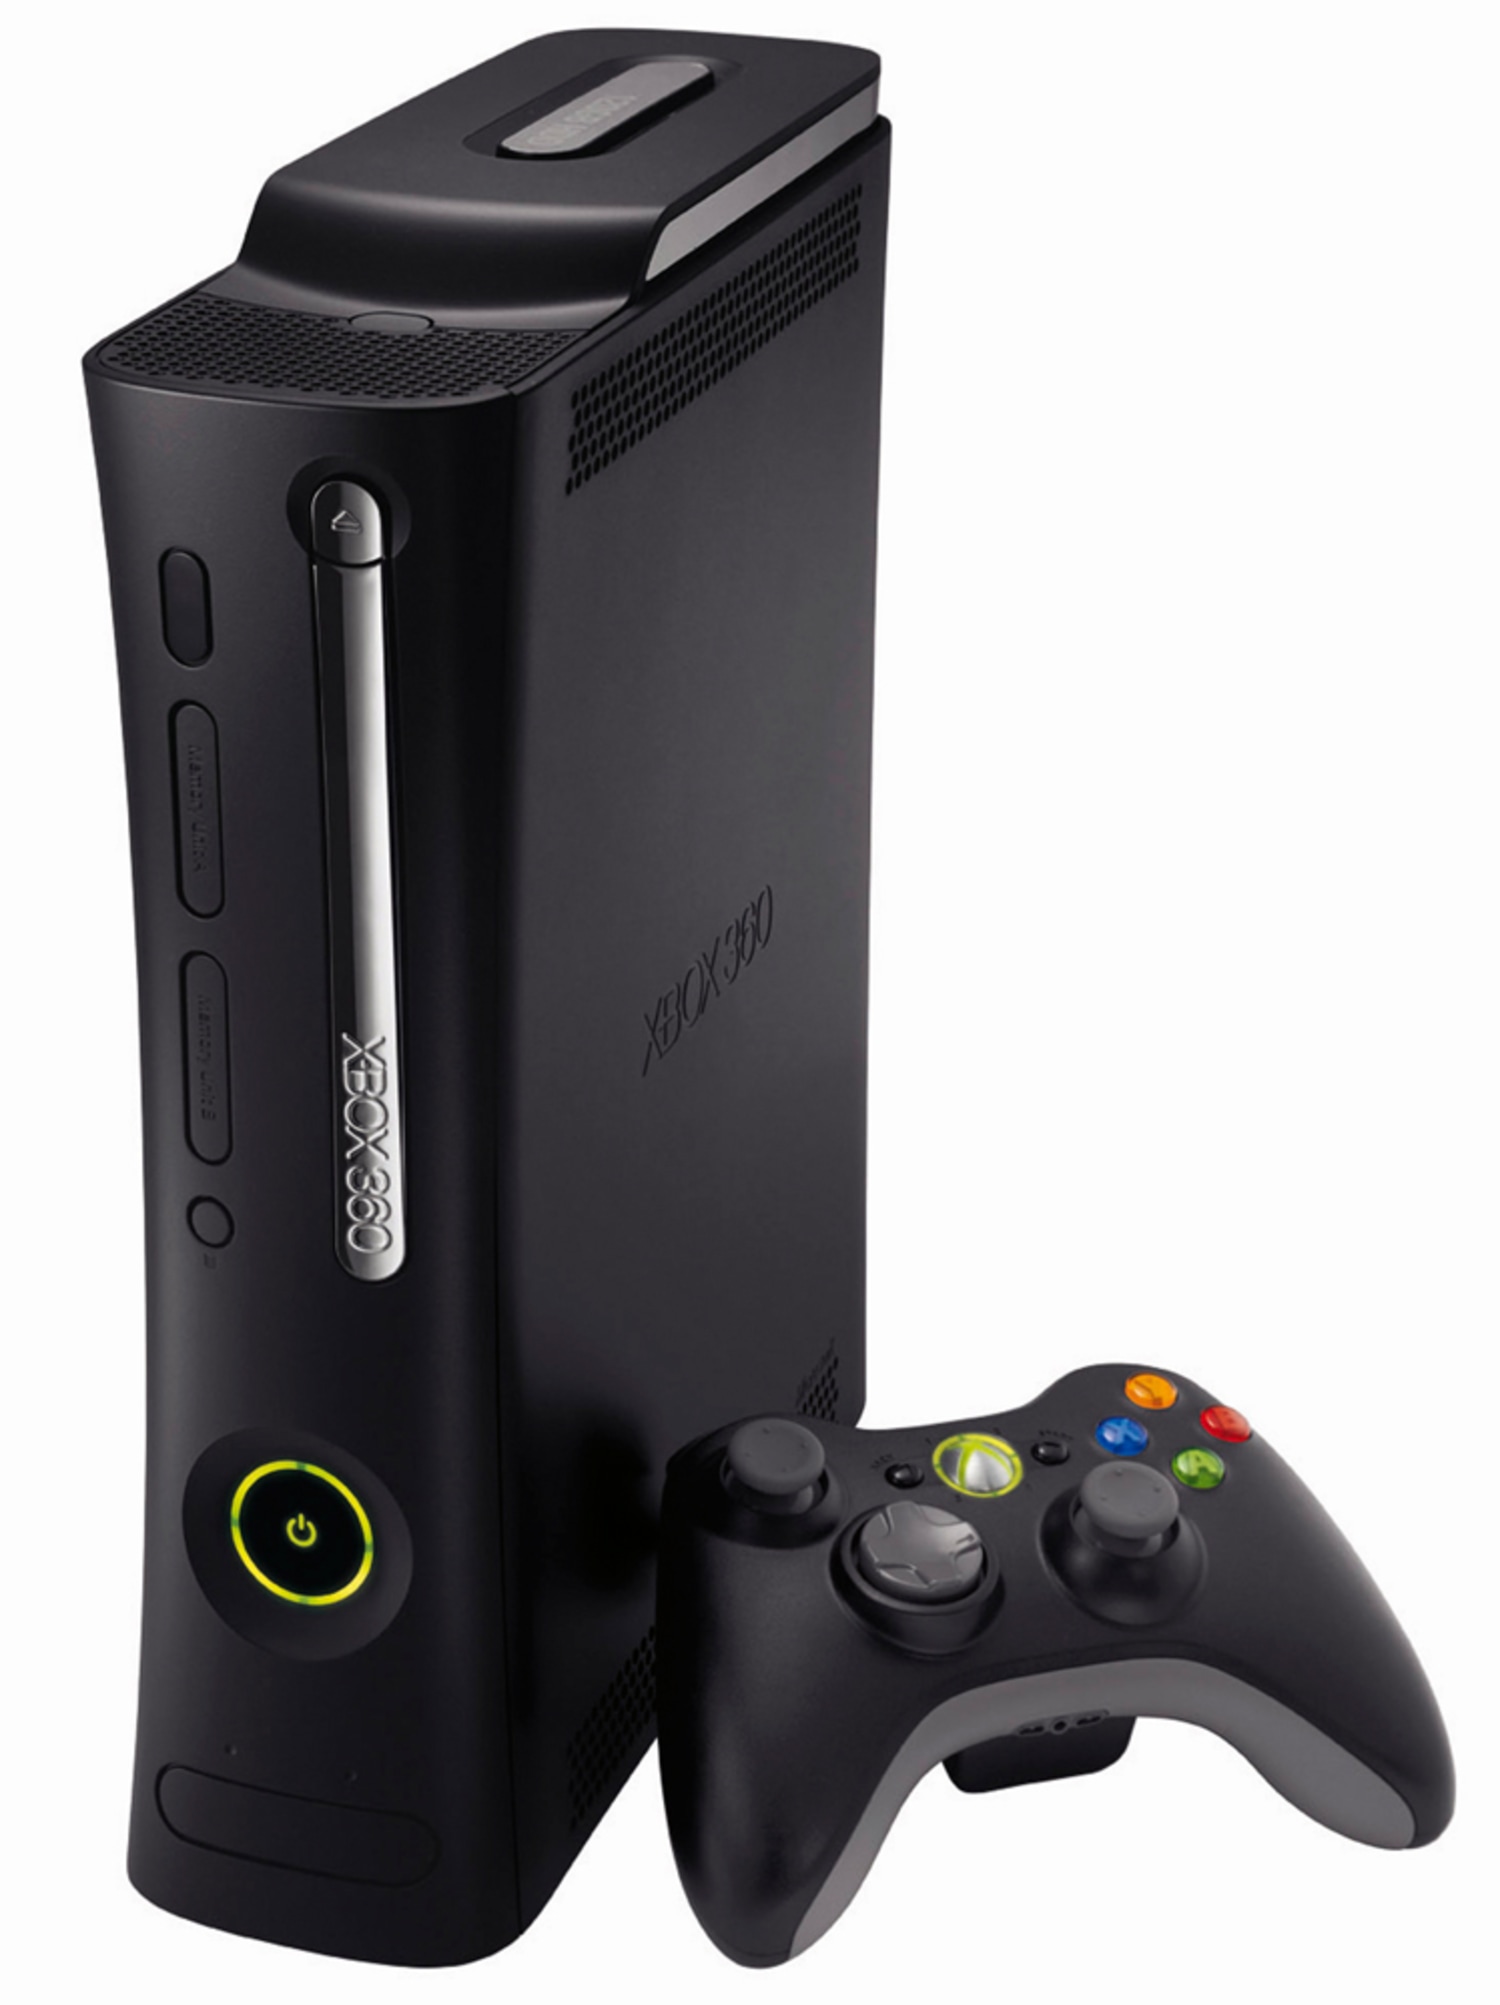 Хбох фрибут. Игровая приставка Xbox 360 250 GB. Хбокс 360 Elite. Консоль игровая приставка Xbox 360. Игровая приставка Microsoft Xbox 360 250gb.